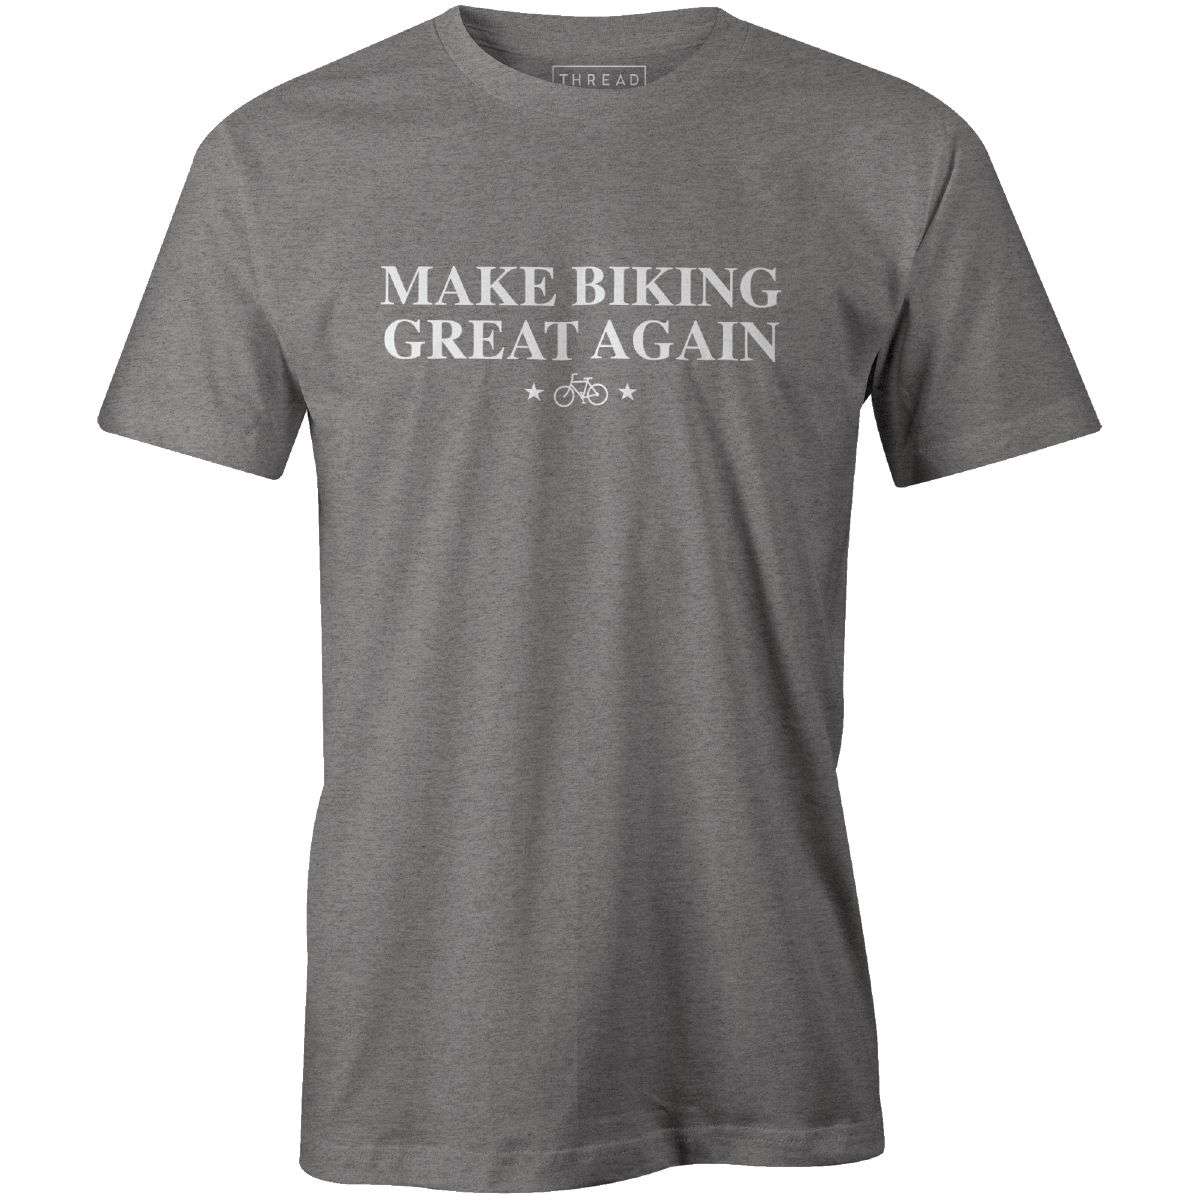 Make Biking Great Again - THREAD+SPOKE